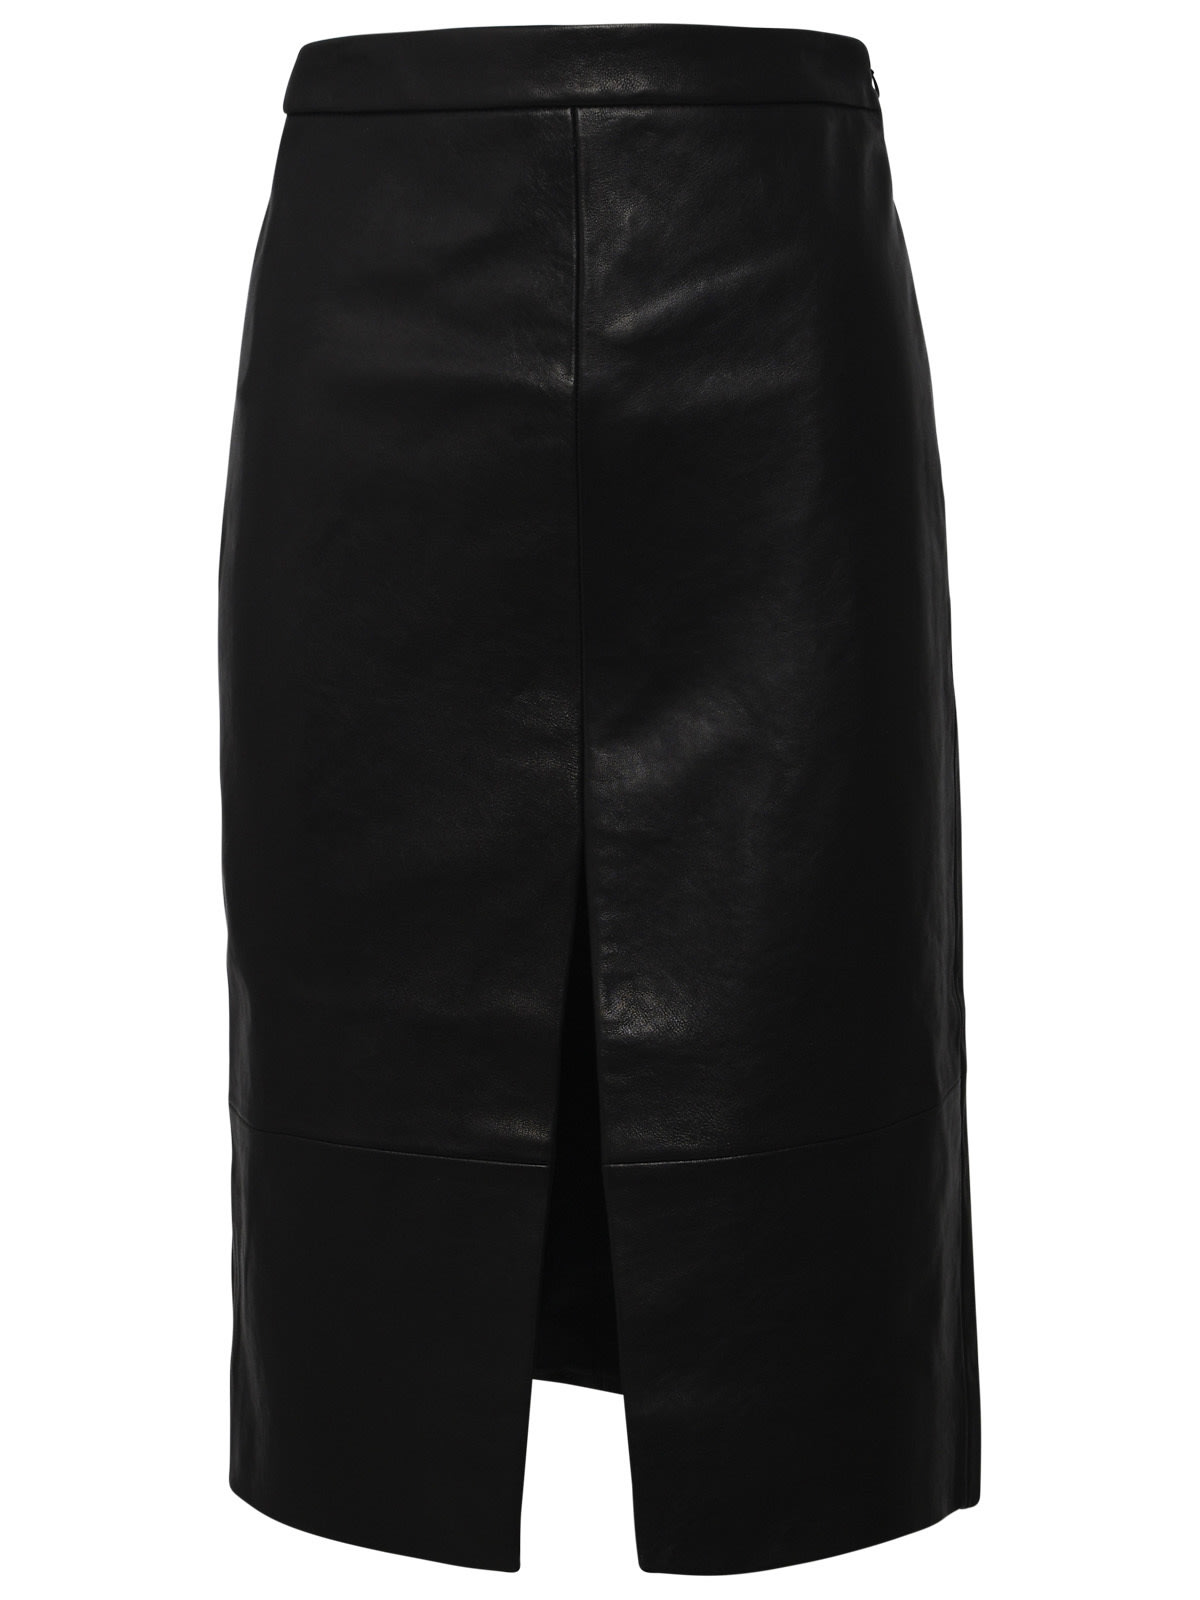 Shop Khaite Freser Black Leather Skirt